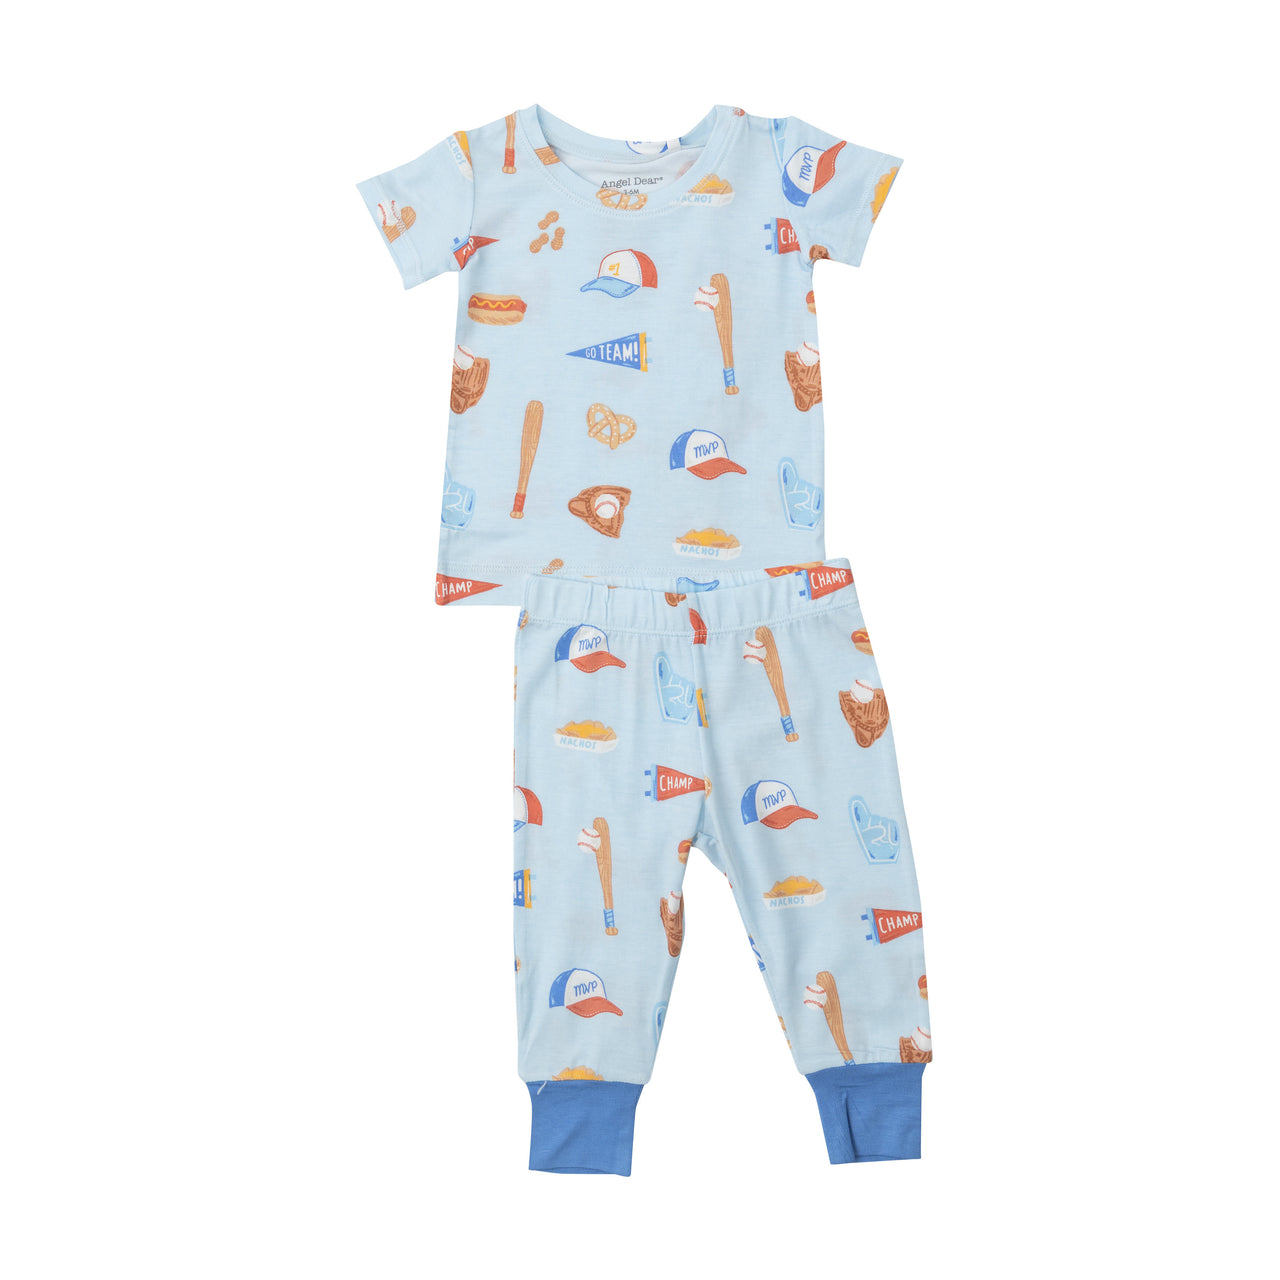 Toddler Pajamas- Baseball